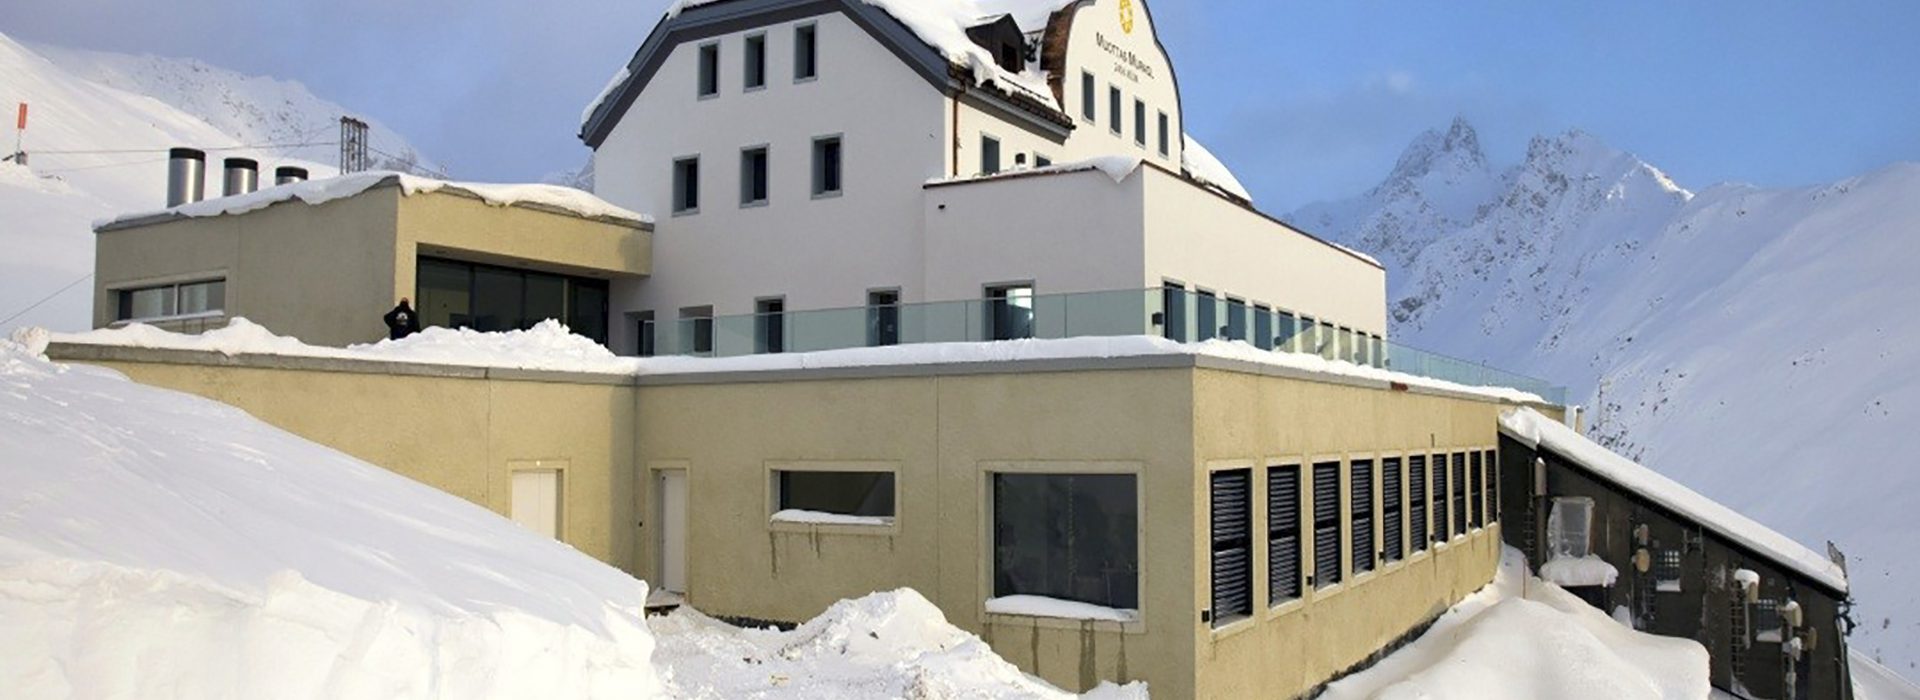 Plus-Energie-Hotel in den Alpen Muottas Muragl